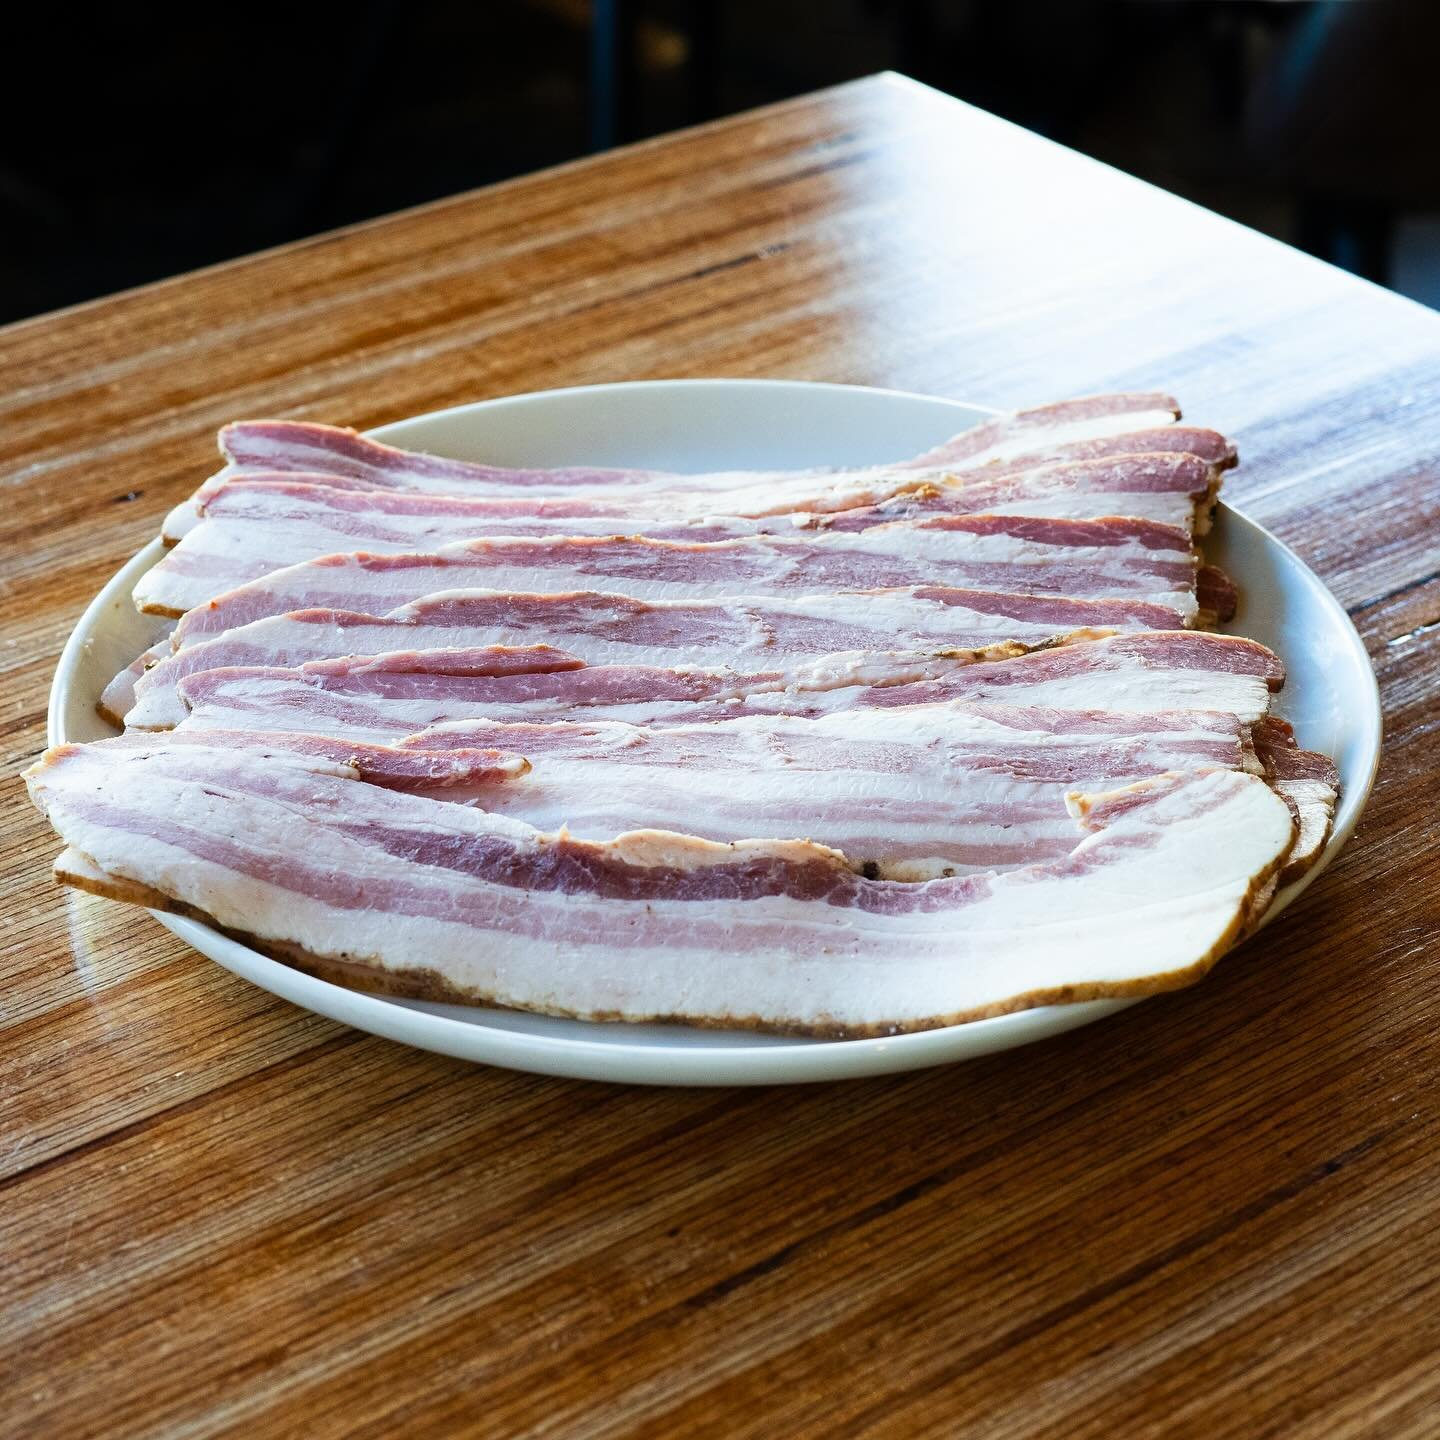 Le meilleur bacon fum&eacute; maison, pr&eacute;par&eacute; avec amour dans notre boucherie 🥓💕 

#bacon #boucherie #faitmaison